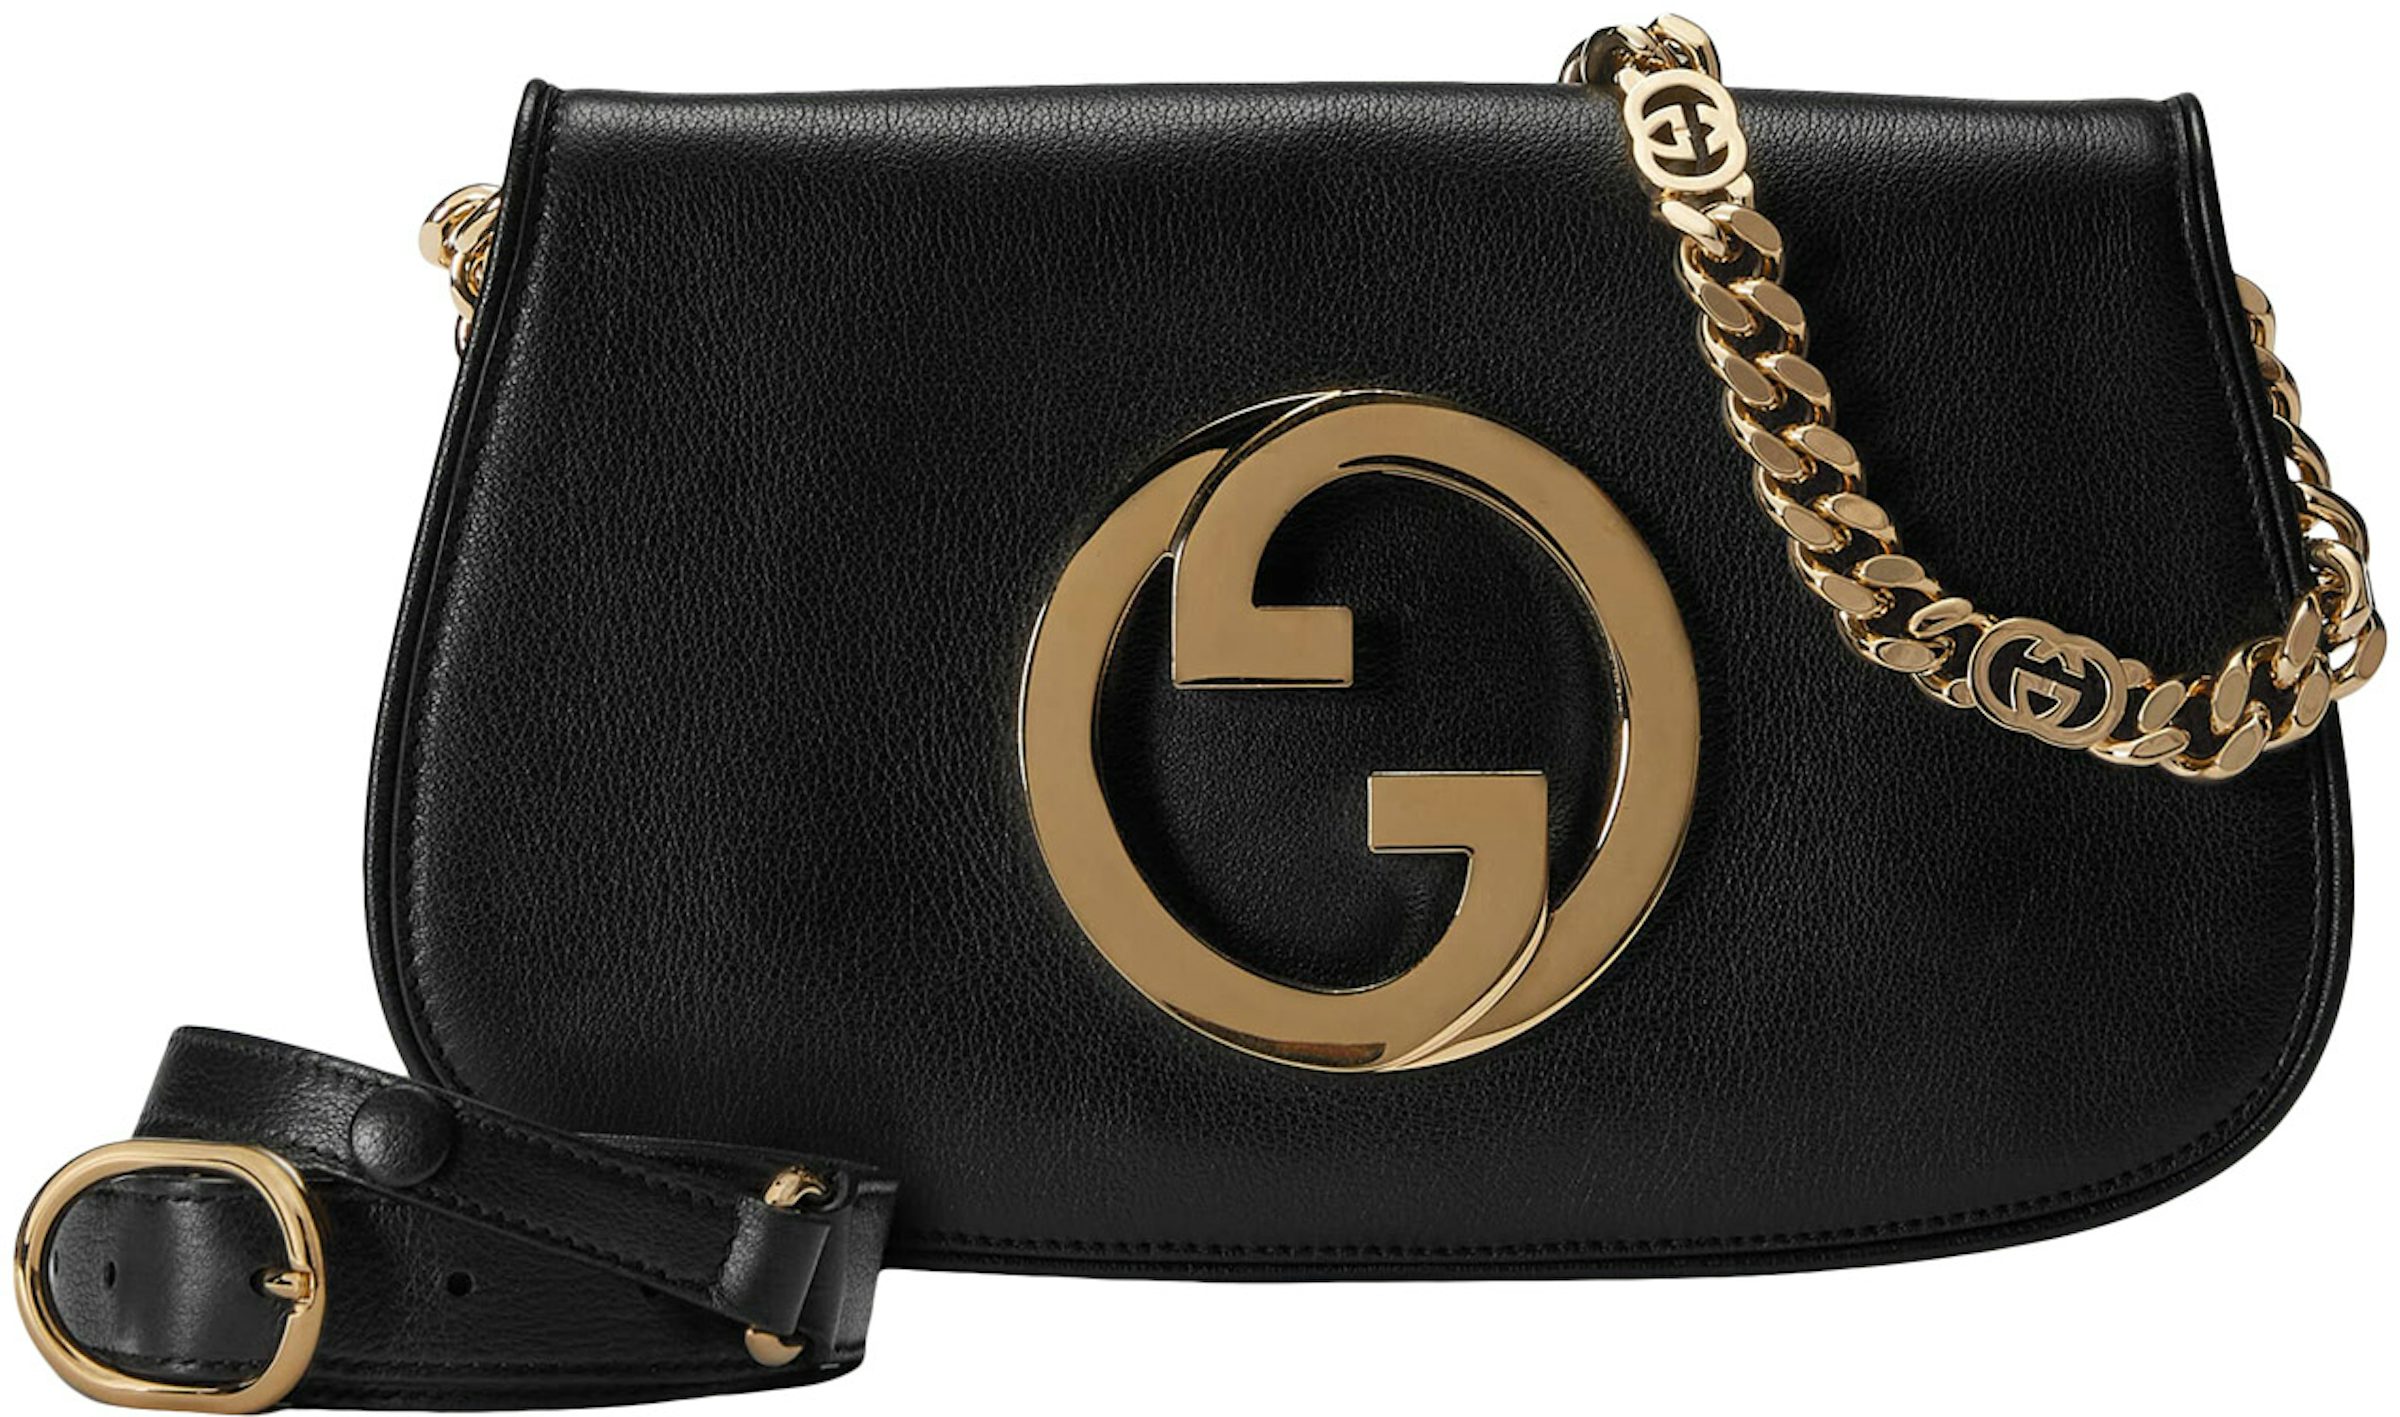 Gucci Blondie top-handle bag in black leather